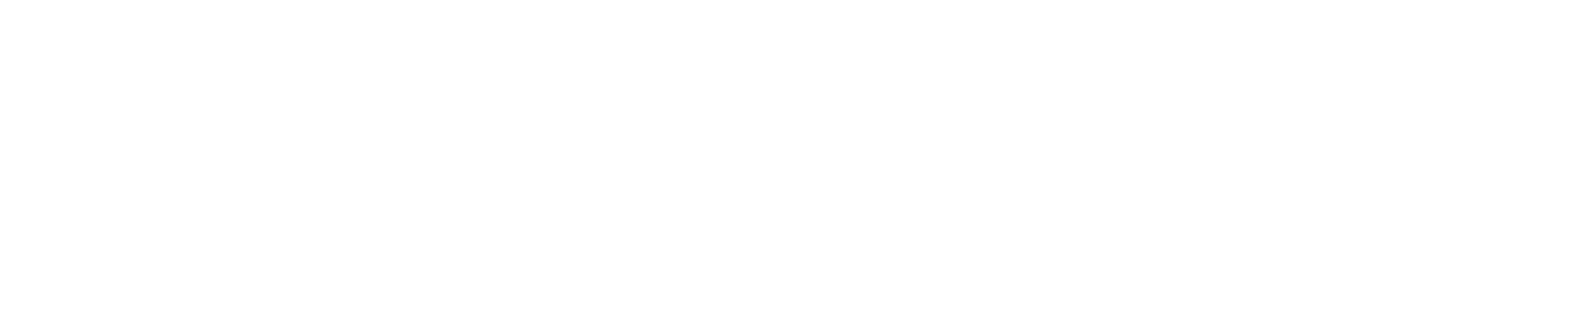 Julius Bär logo grand pour les fonds sombres (PNG transparent)